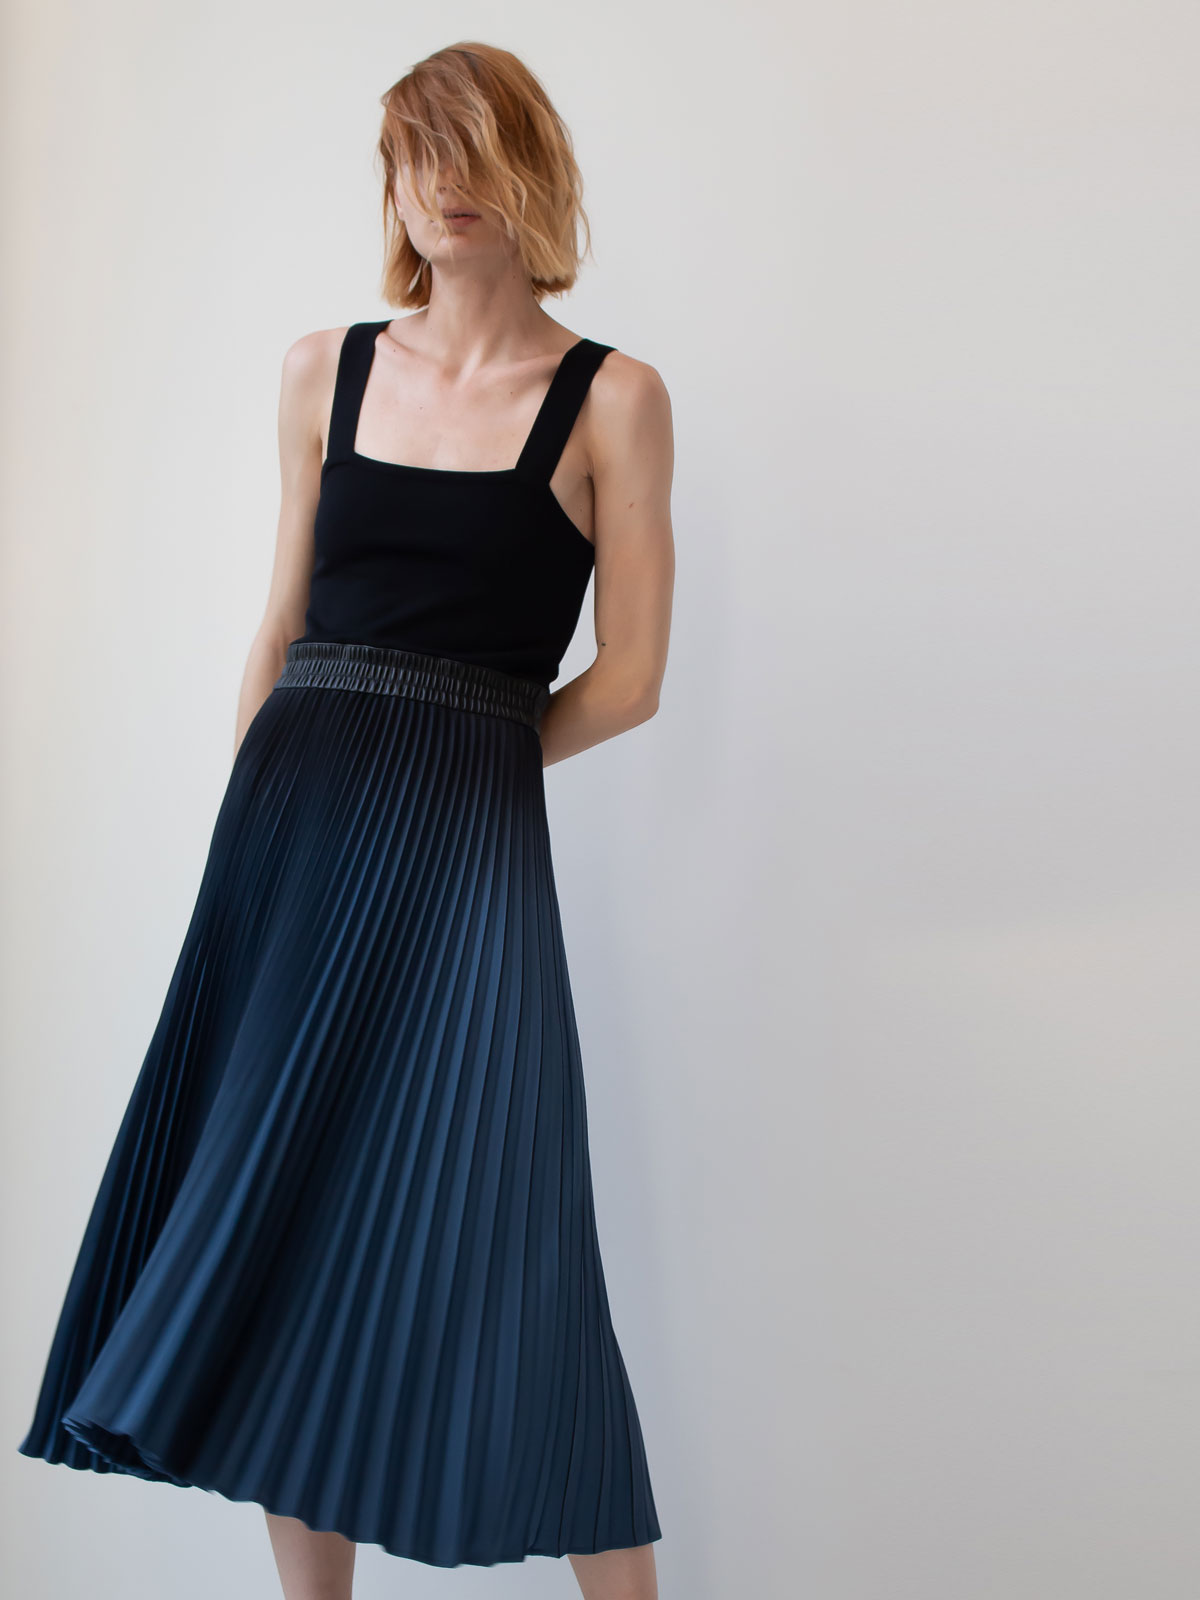 Proenza Schouler | Pleated-skirt dress